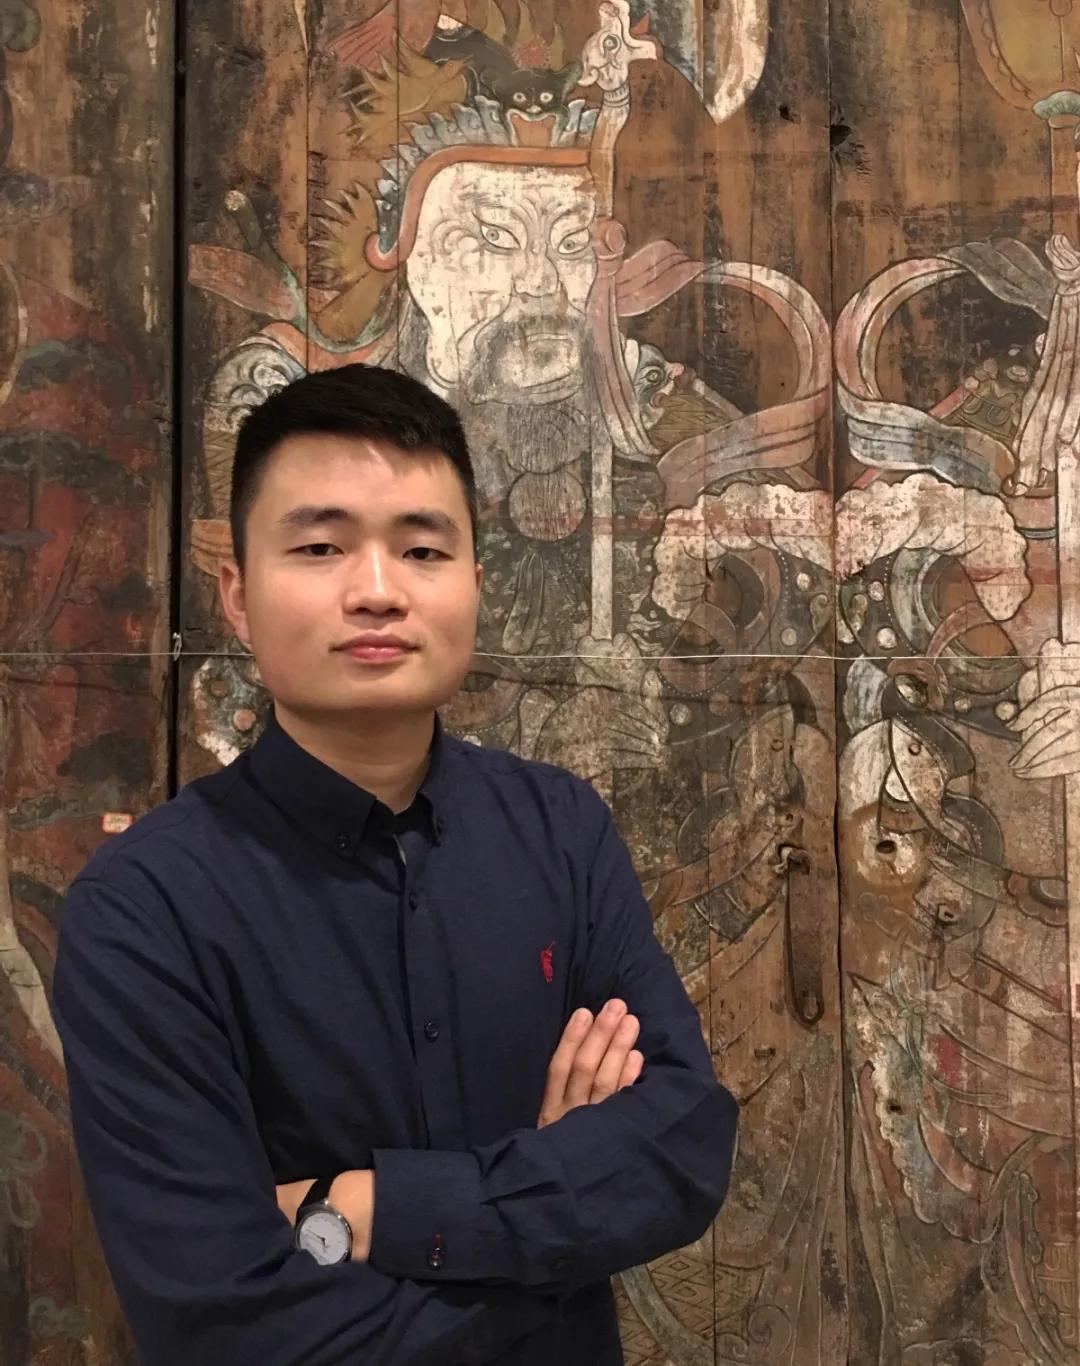 刘磊1990年生于湖南,2015年毕业于四川美术学院雕塑系,获学士学位